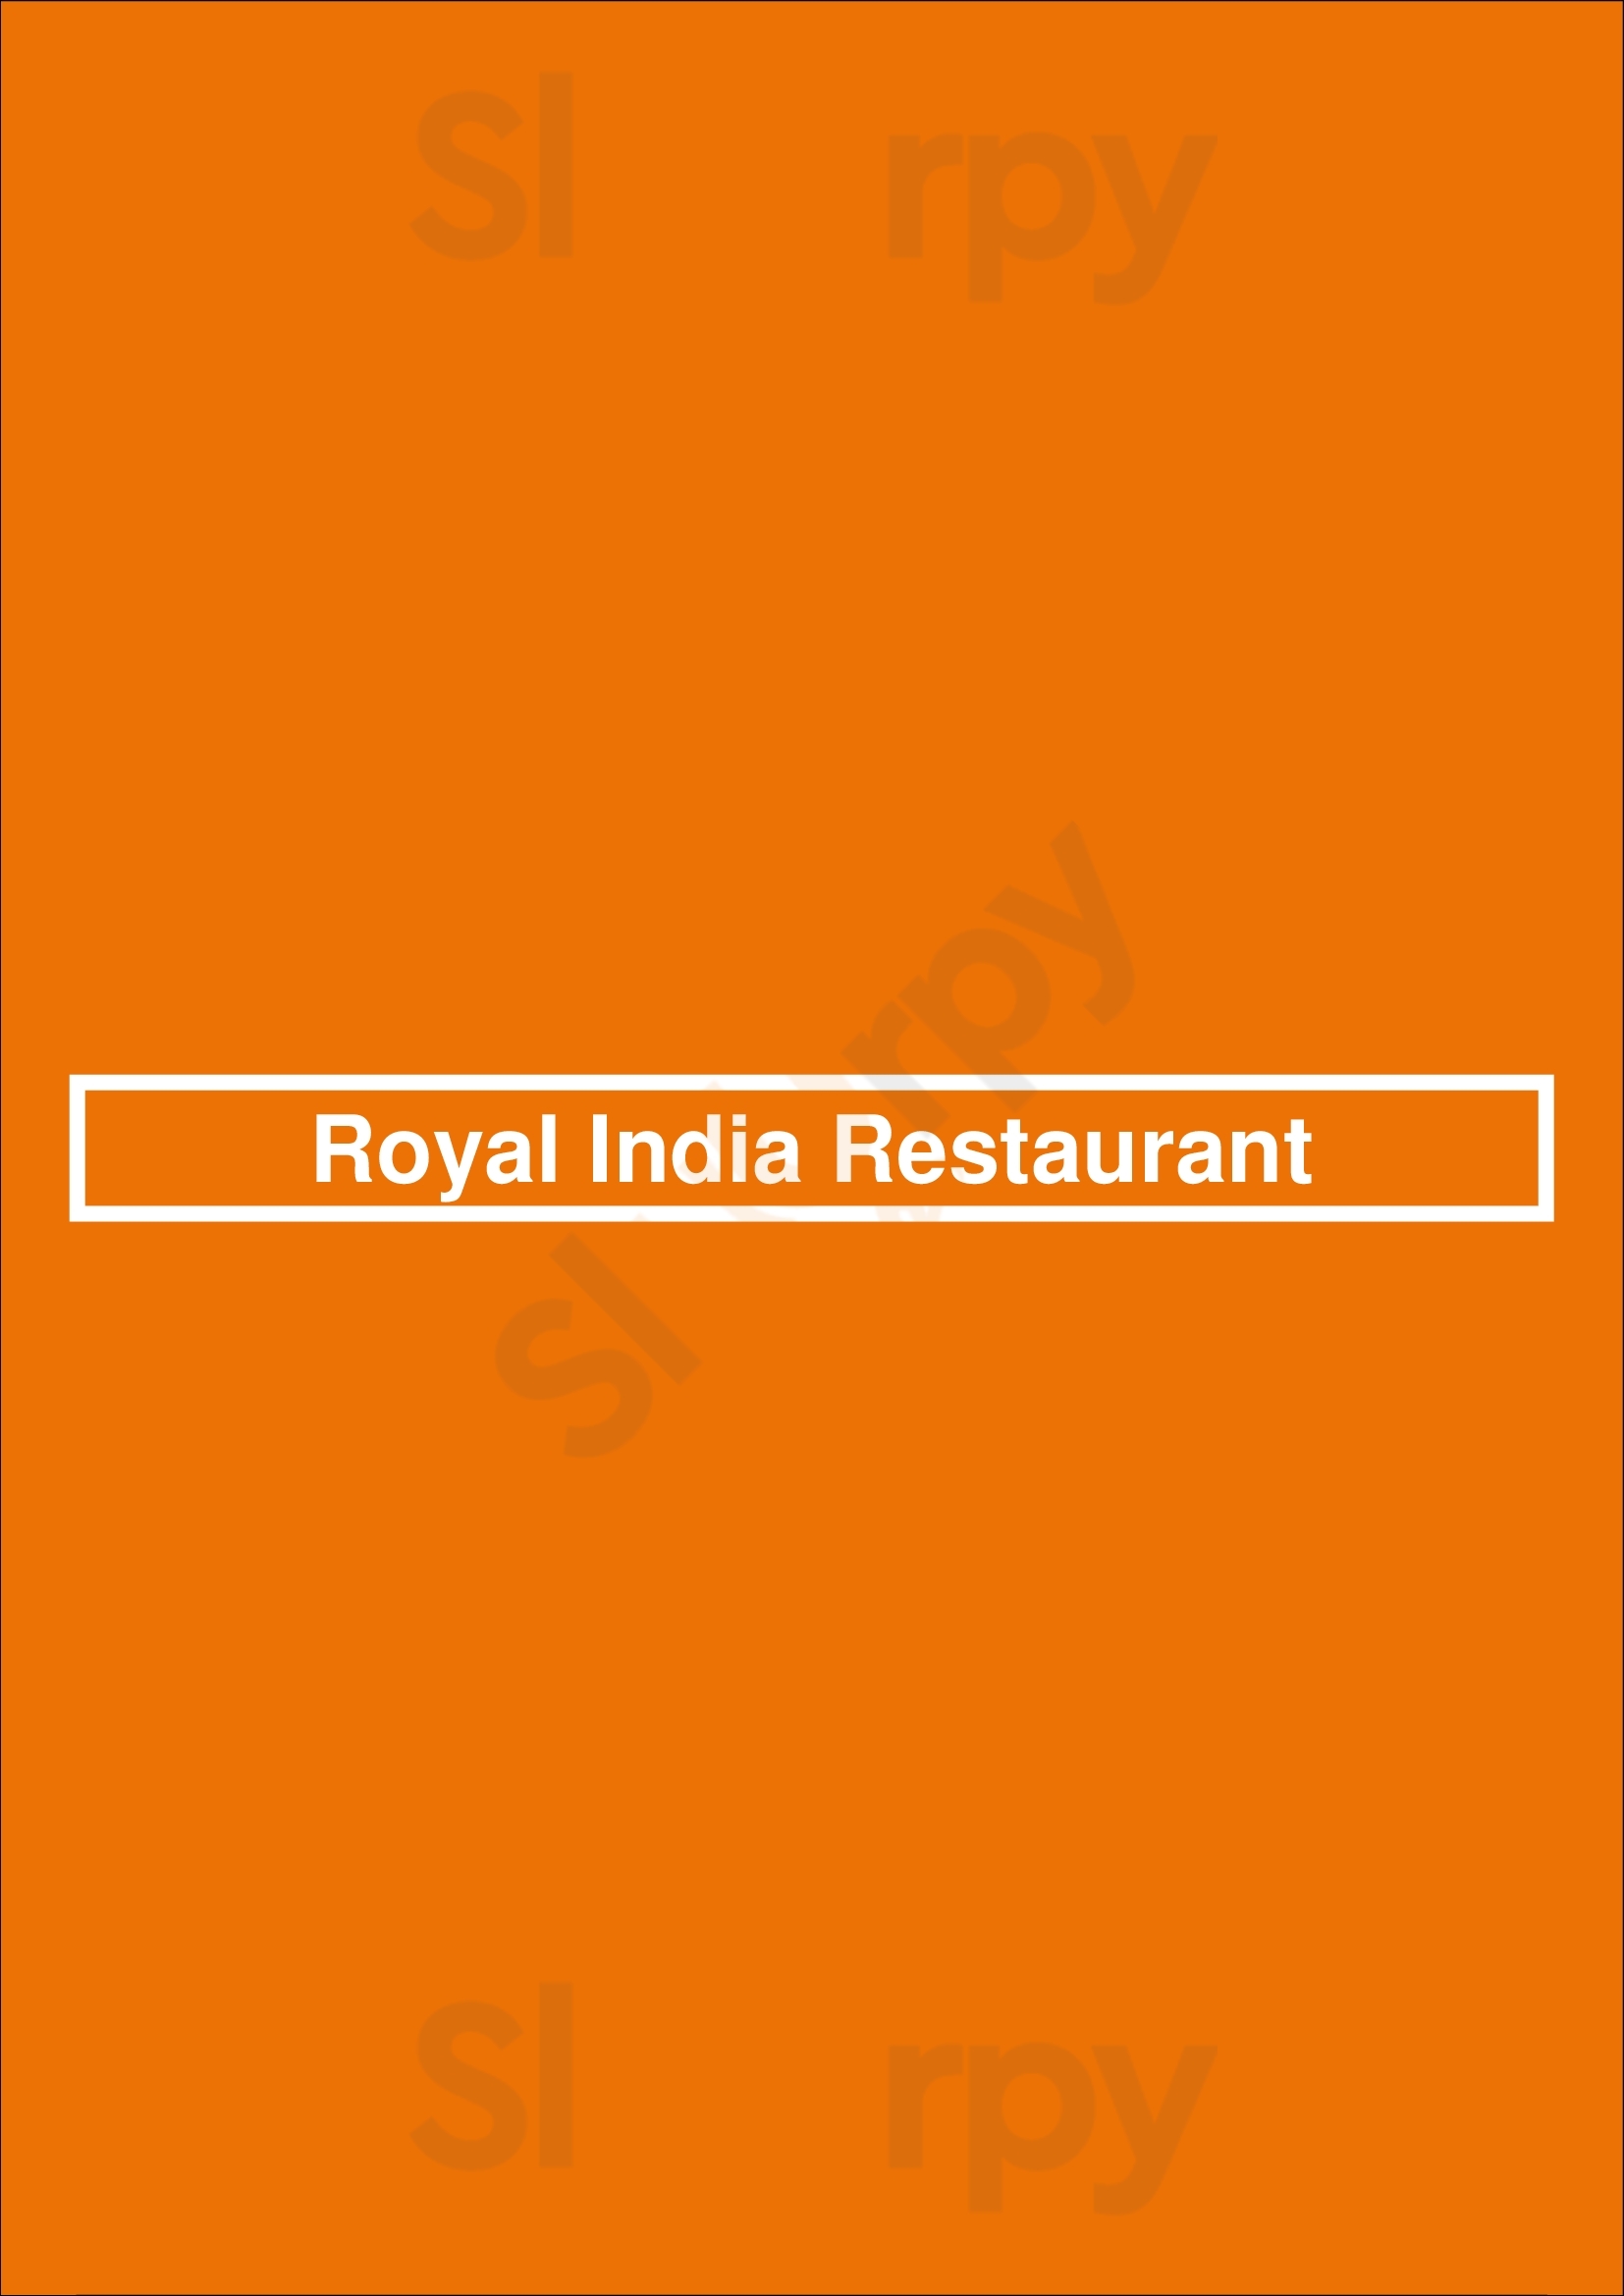 Royal India Restaurant Perth Menu - 1